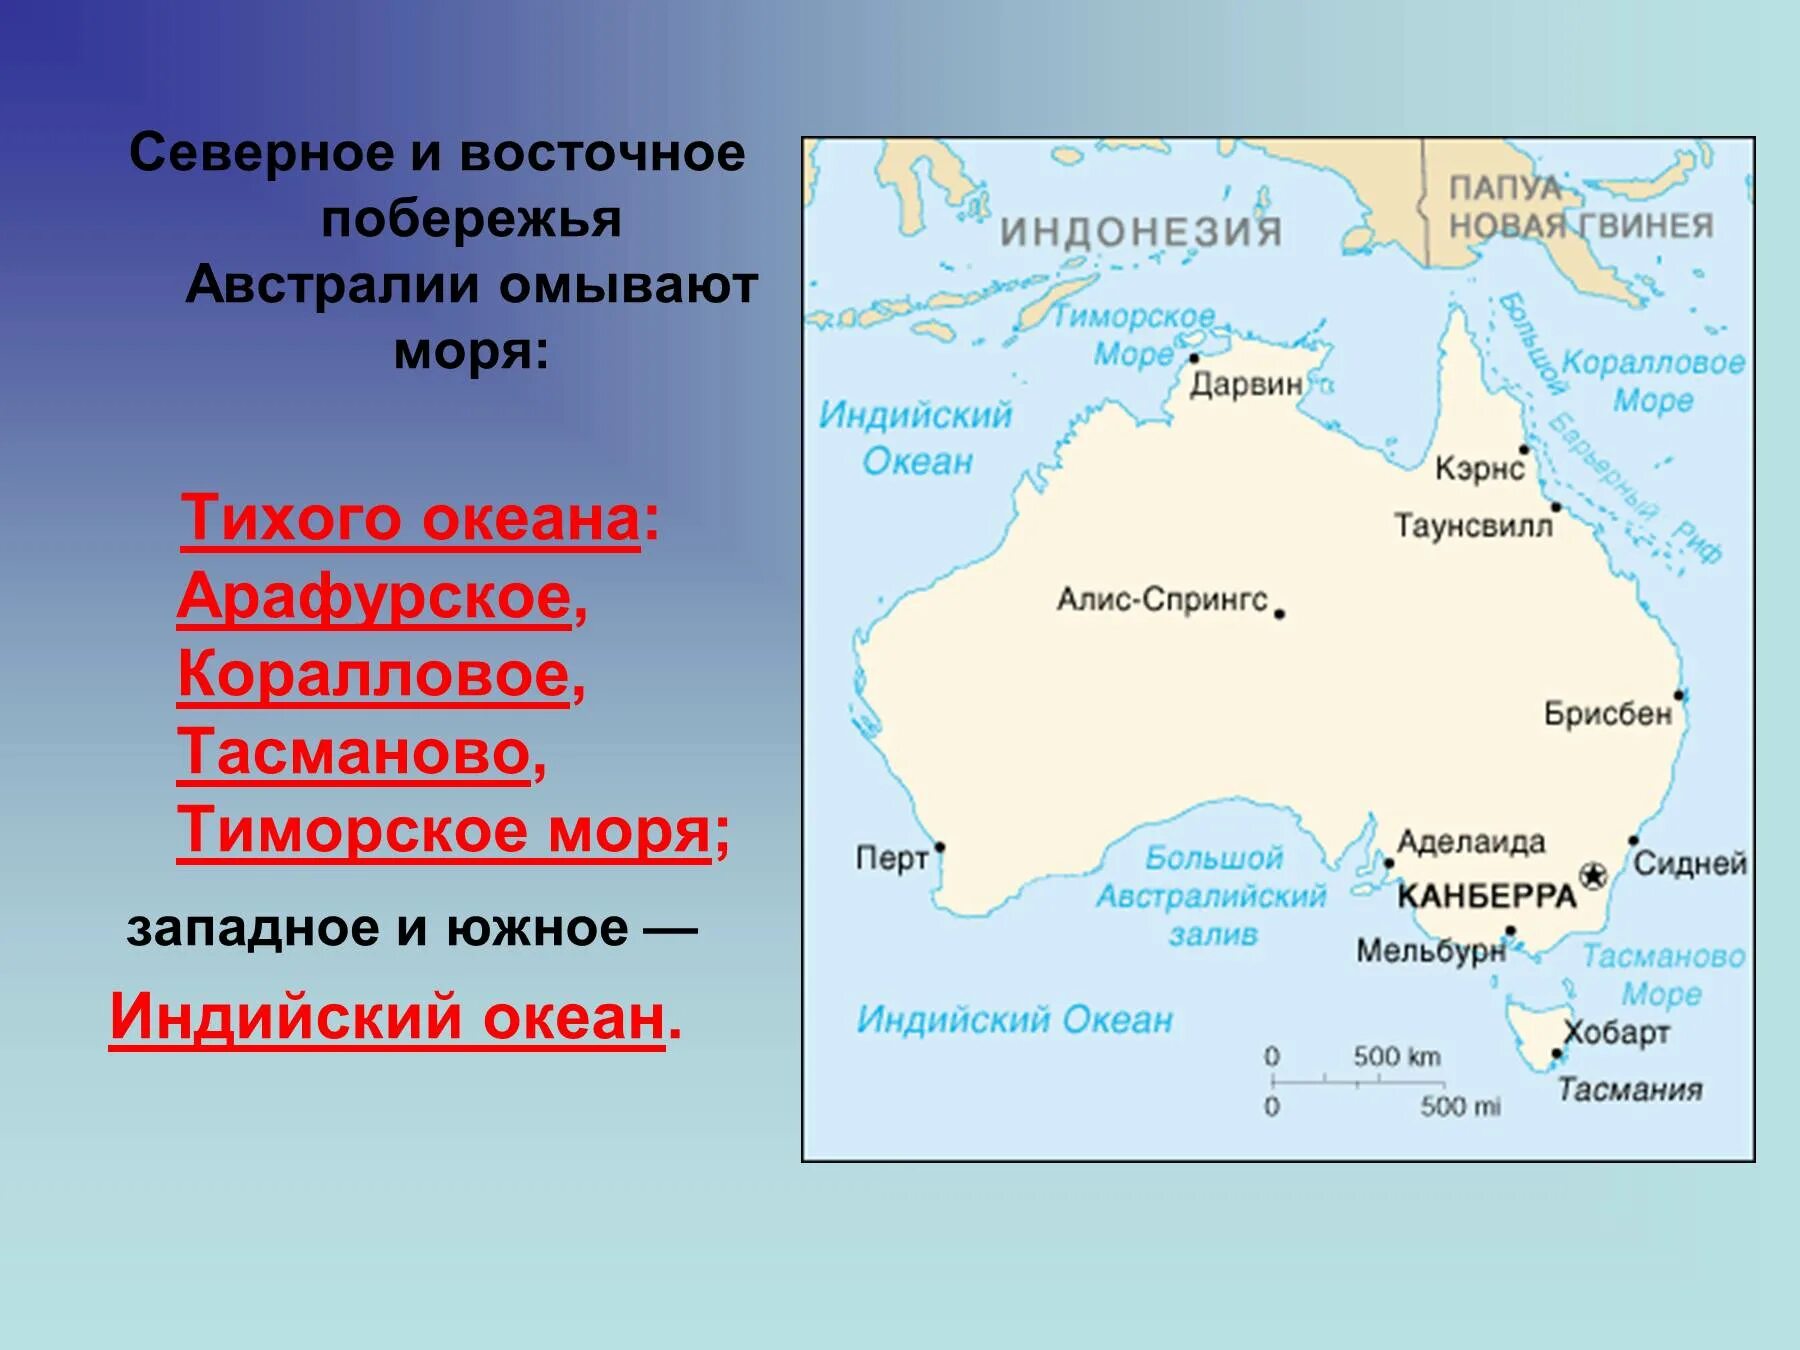 Какие воды омывает тихий океан. Моря: тасманово, Тиморское, коралловое, Арафурское.. Тасманово море на карте Австралии. Австралия моря тасманово коралловое и Арафурское. Австралия моря и океаны омывающие материк.